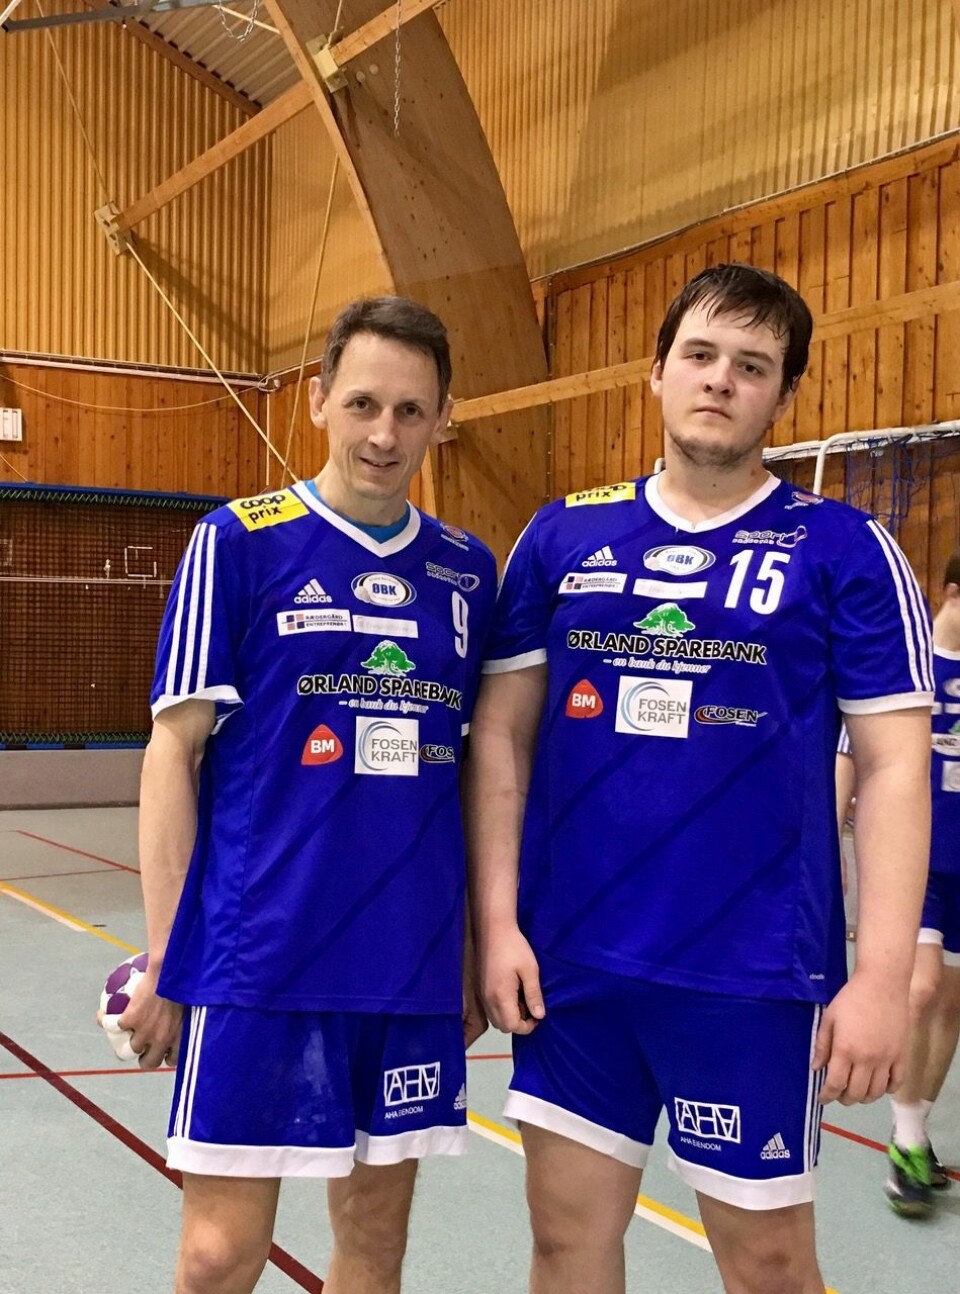 Far og sønn. Ordfører Tom Myrvold og sønnen Markus (19) spiller begge på samme håndballklubb (Foto:privat).